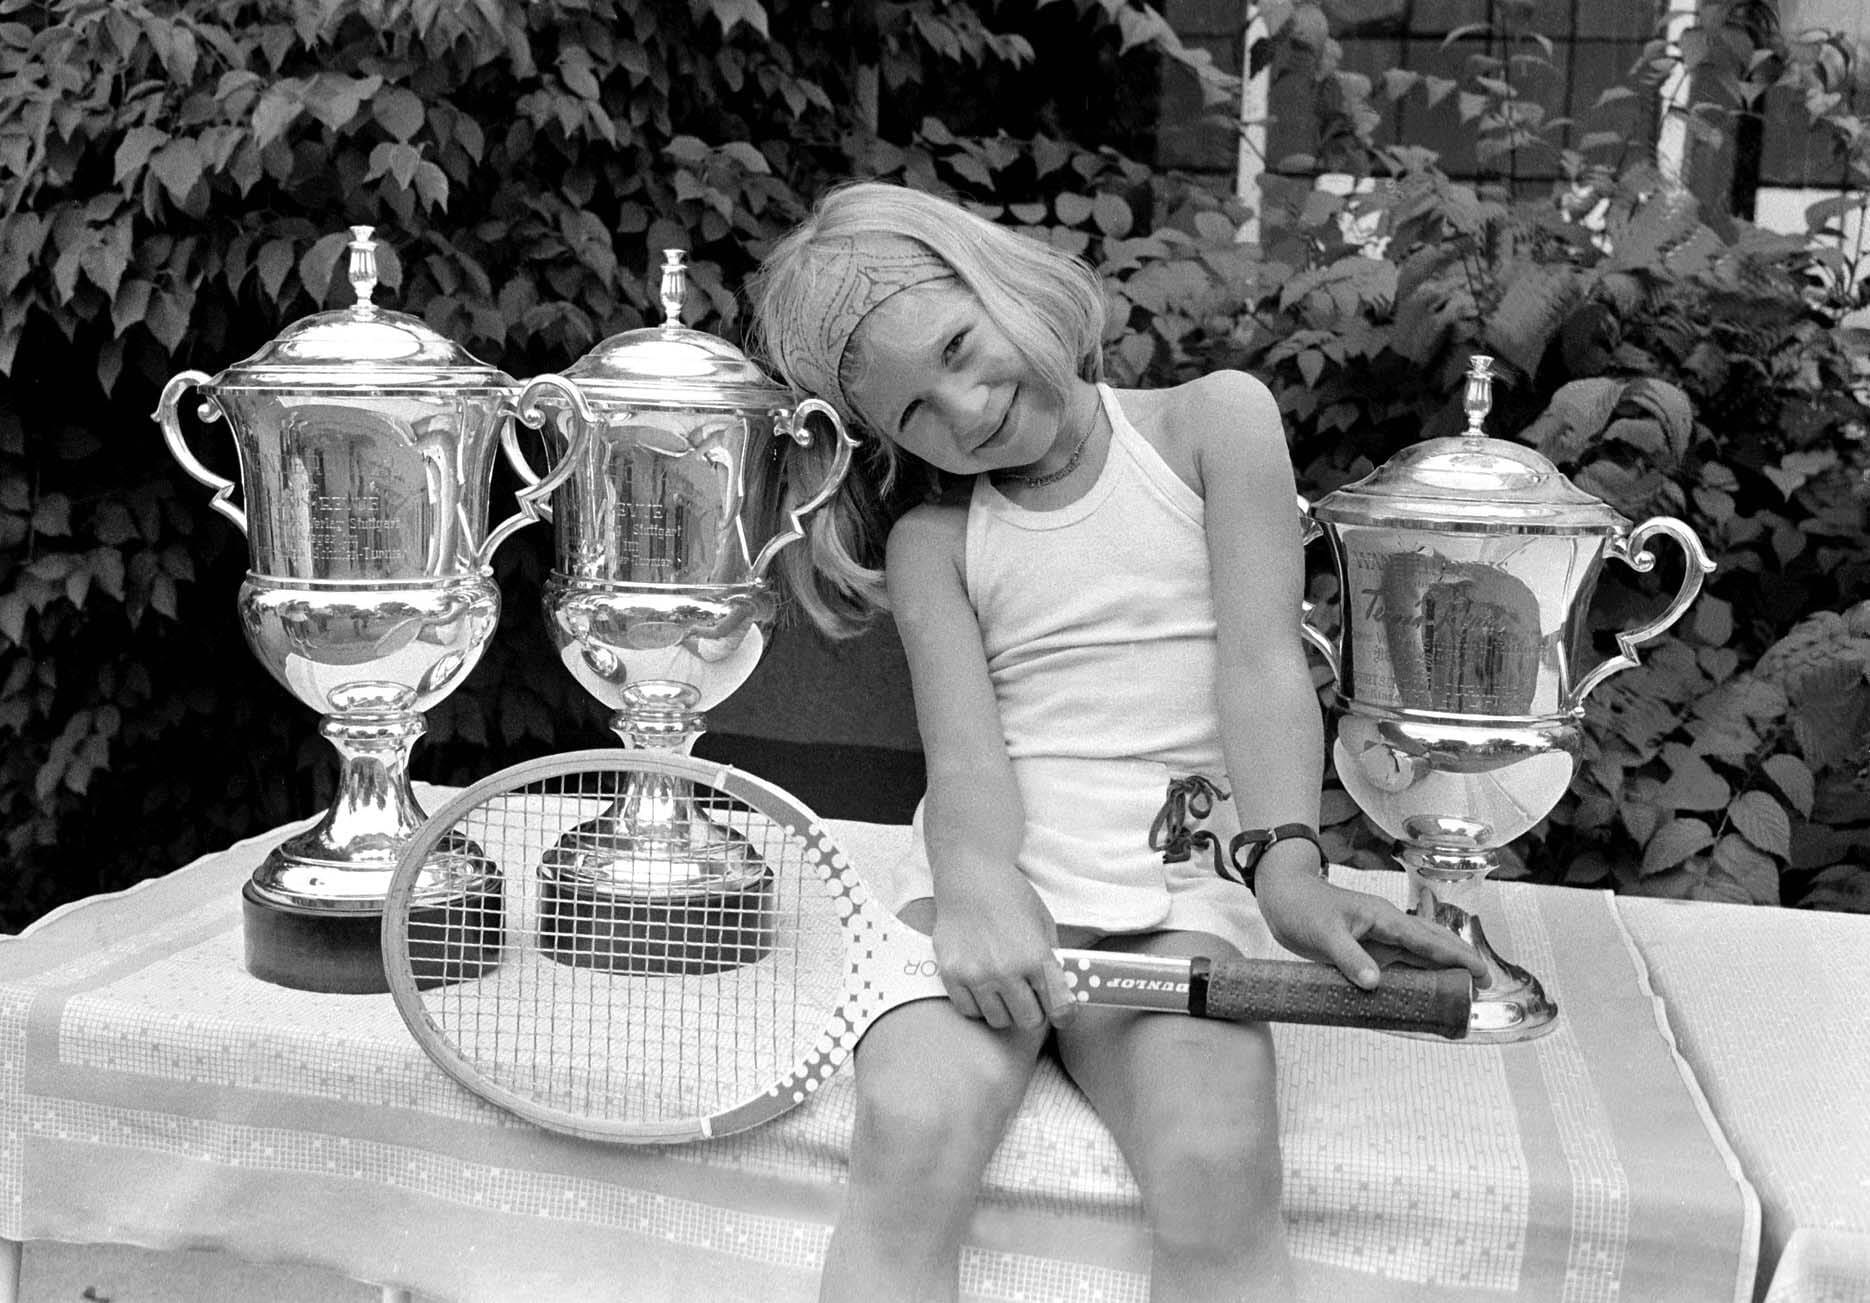 Pokale, Pokale, Pokale: Steffi Graf lernt früh alle Arten von Trophäen kennen. Mit sechs Jahren gewinnt sie das traditionelle Jüngsten-Turnier in München.